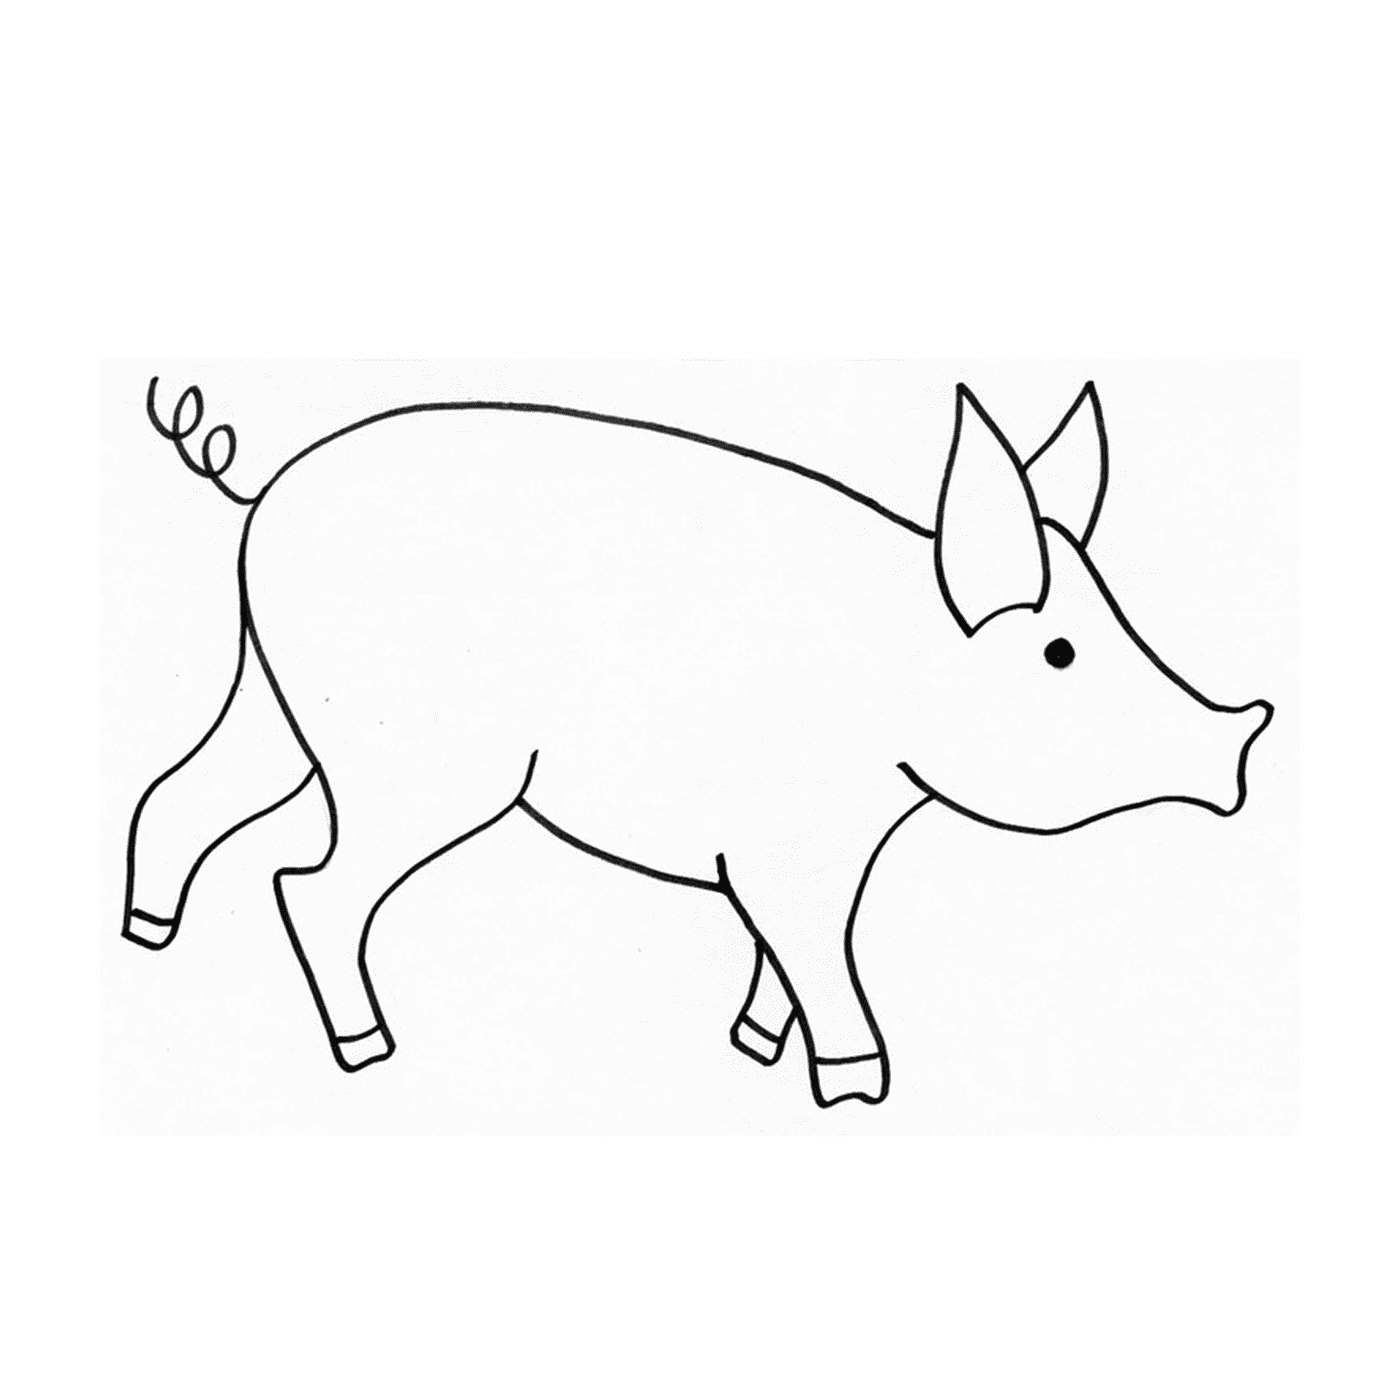  Un cerdo enano con un estilo de dibujo 